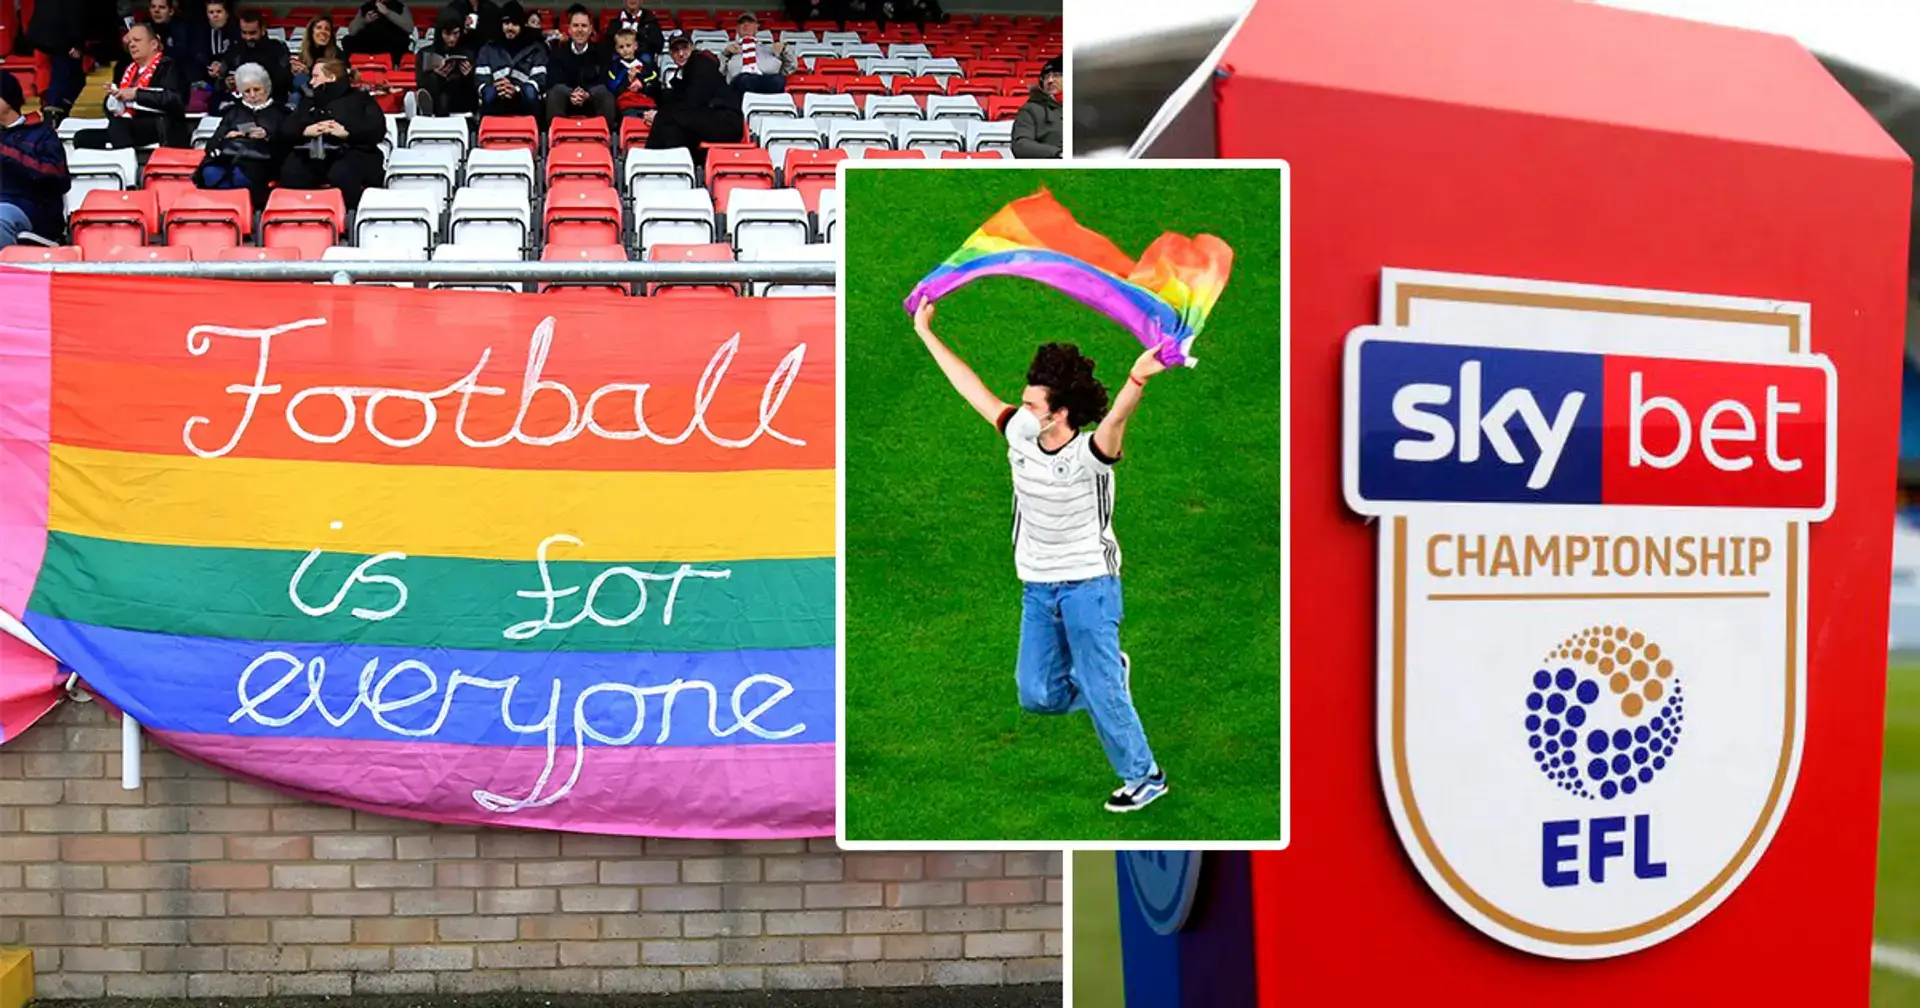 La estrella del Campeonato saldrá en una entrevista televisiva la próxima semana; podría convertirse en el primer futbolista abiertamente gay en Gran Bretaña